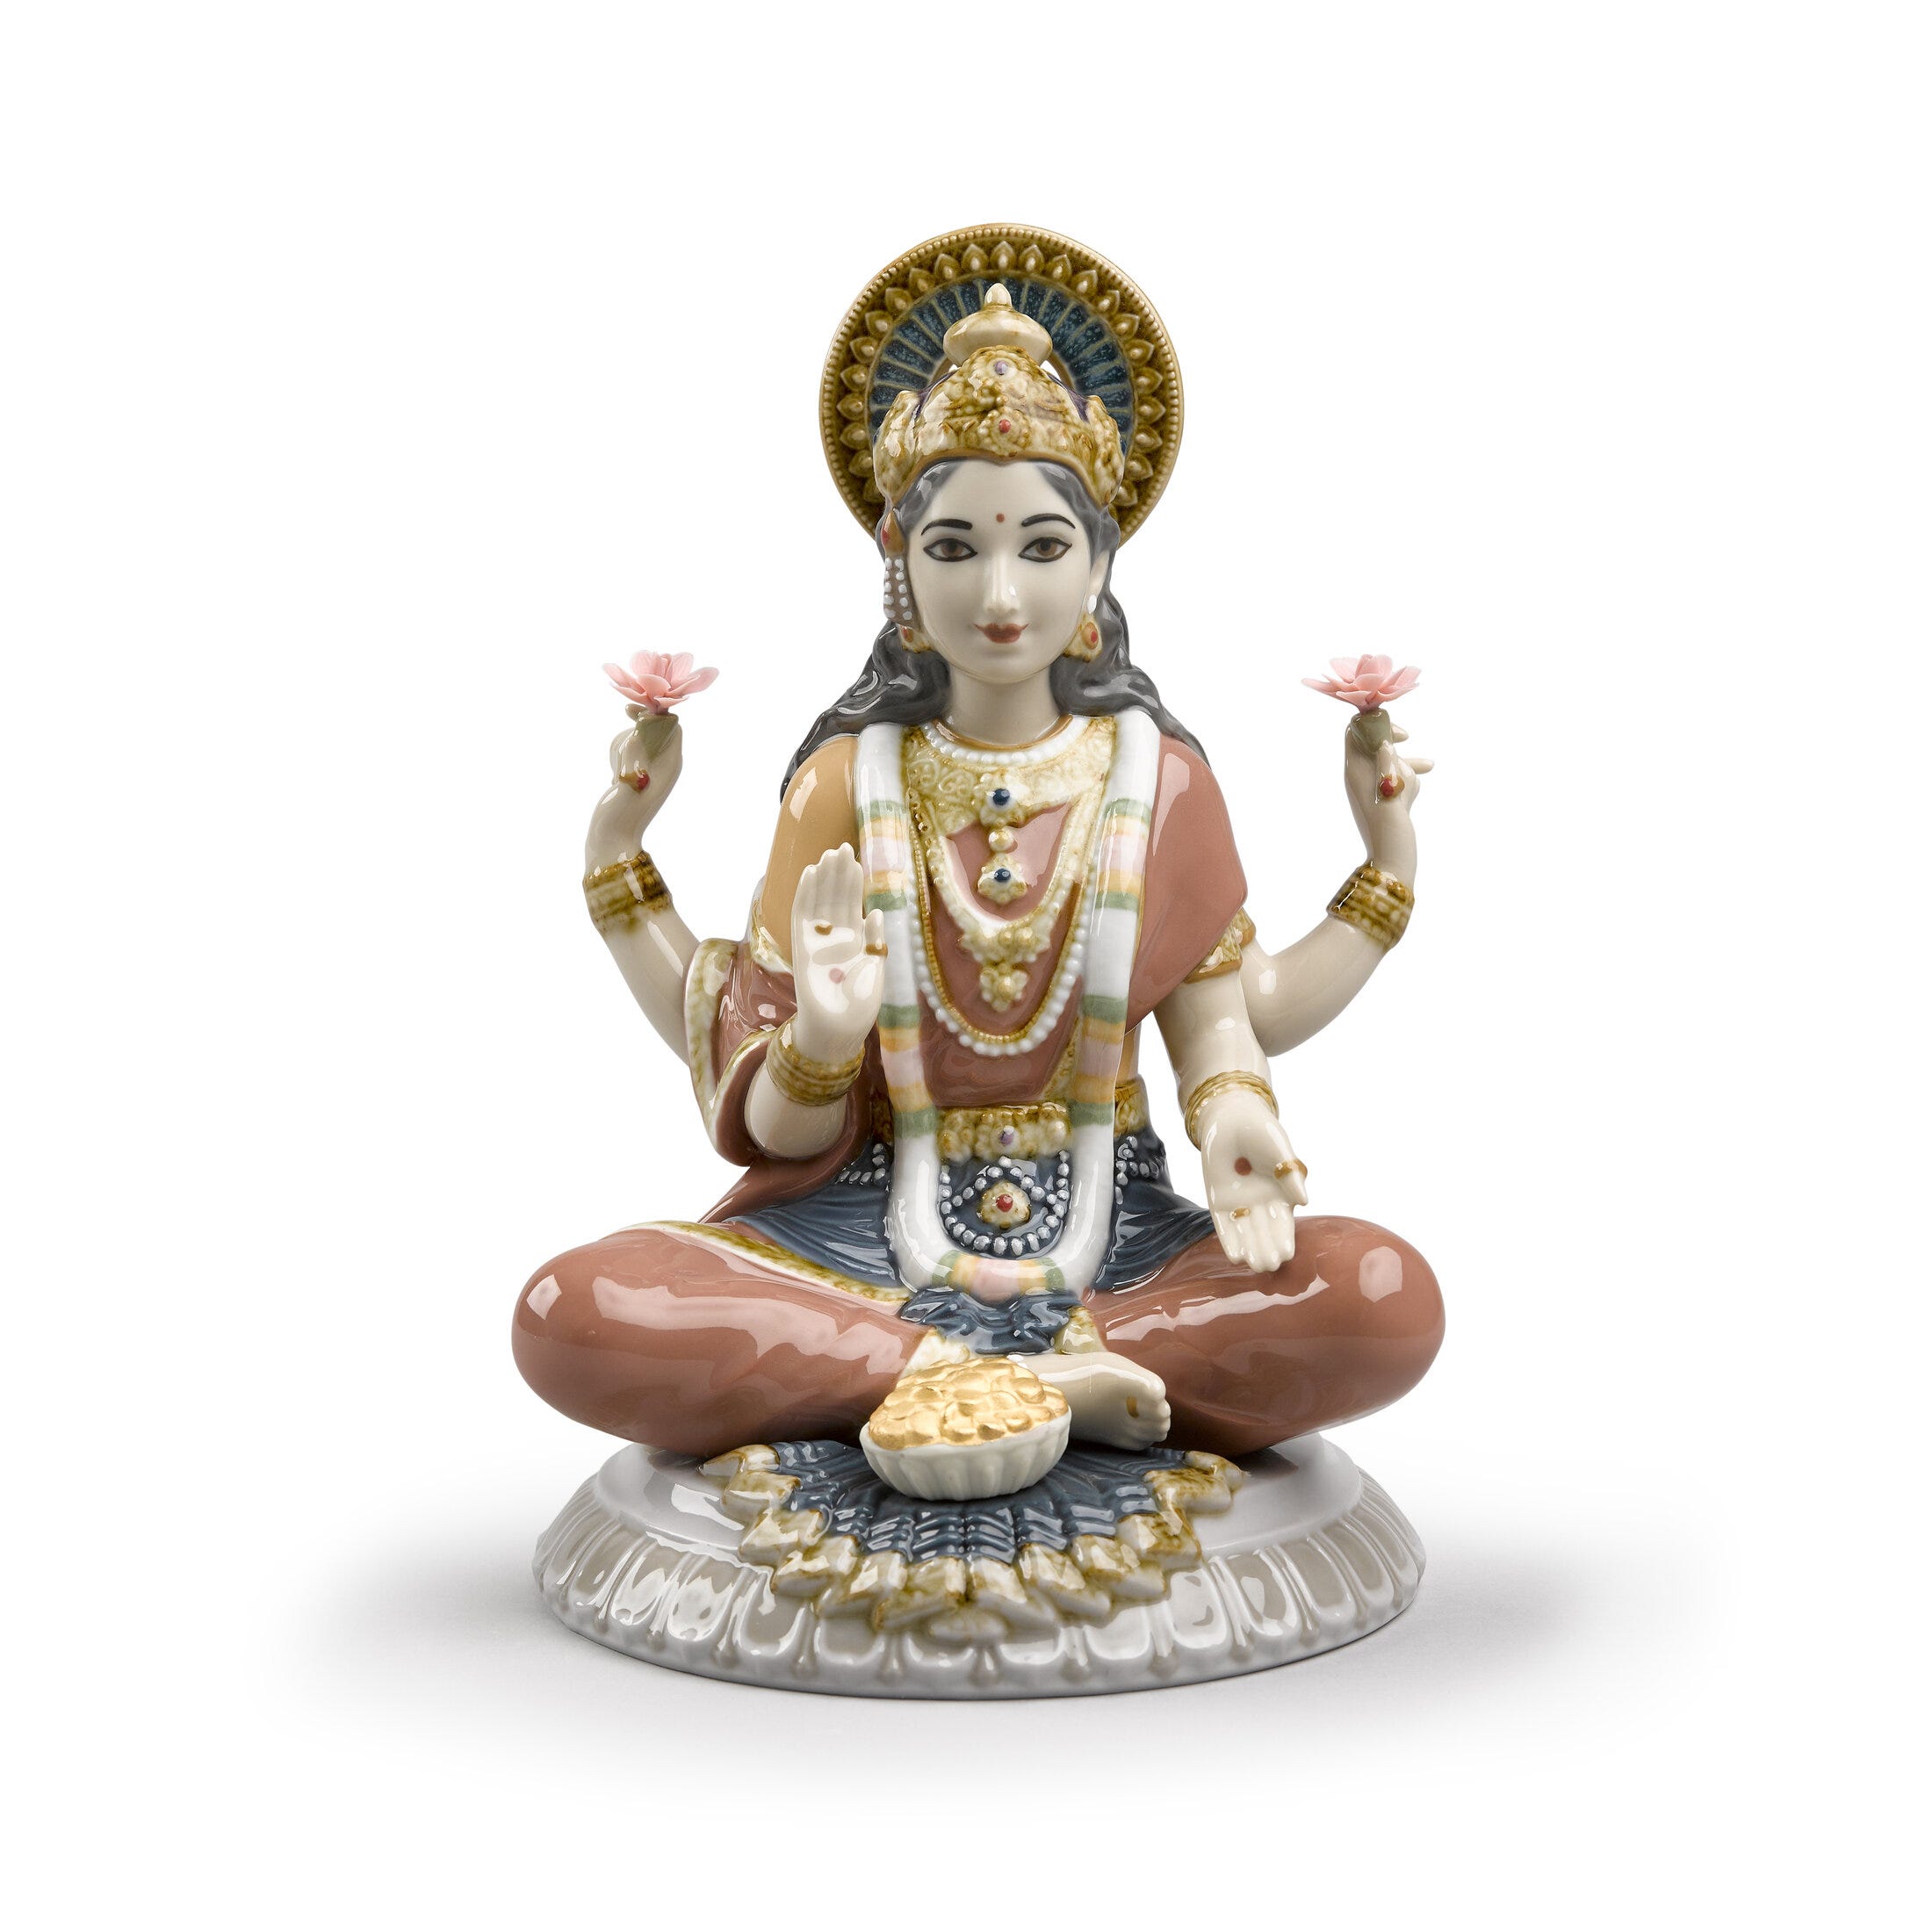 Figurina della dea Sri Lakshmi